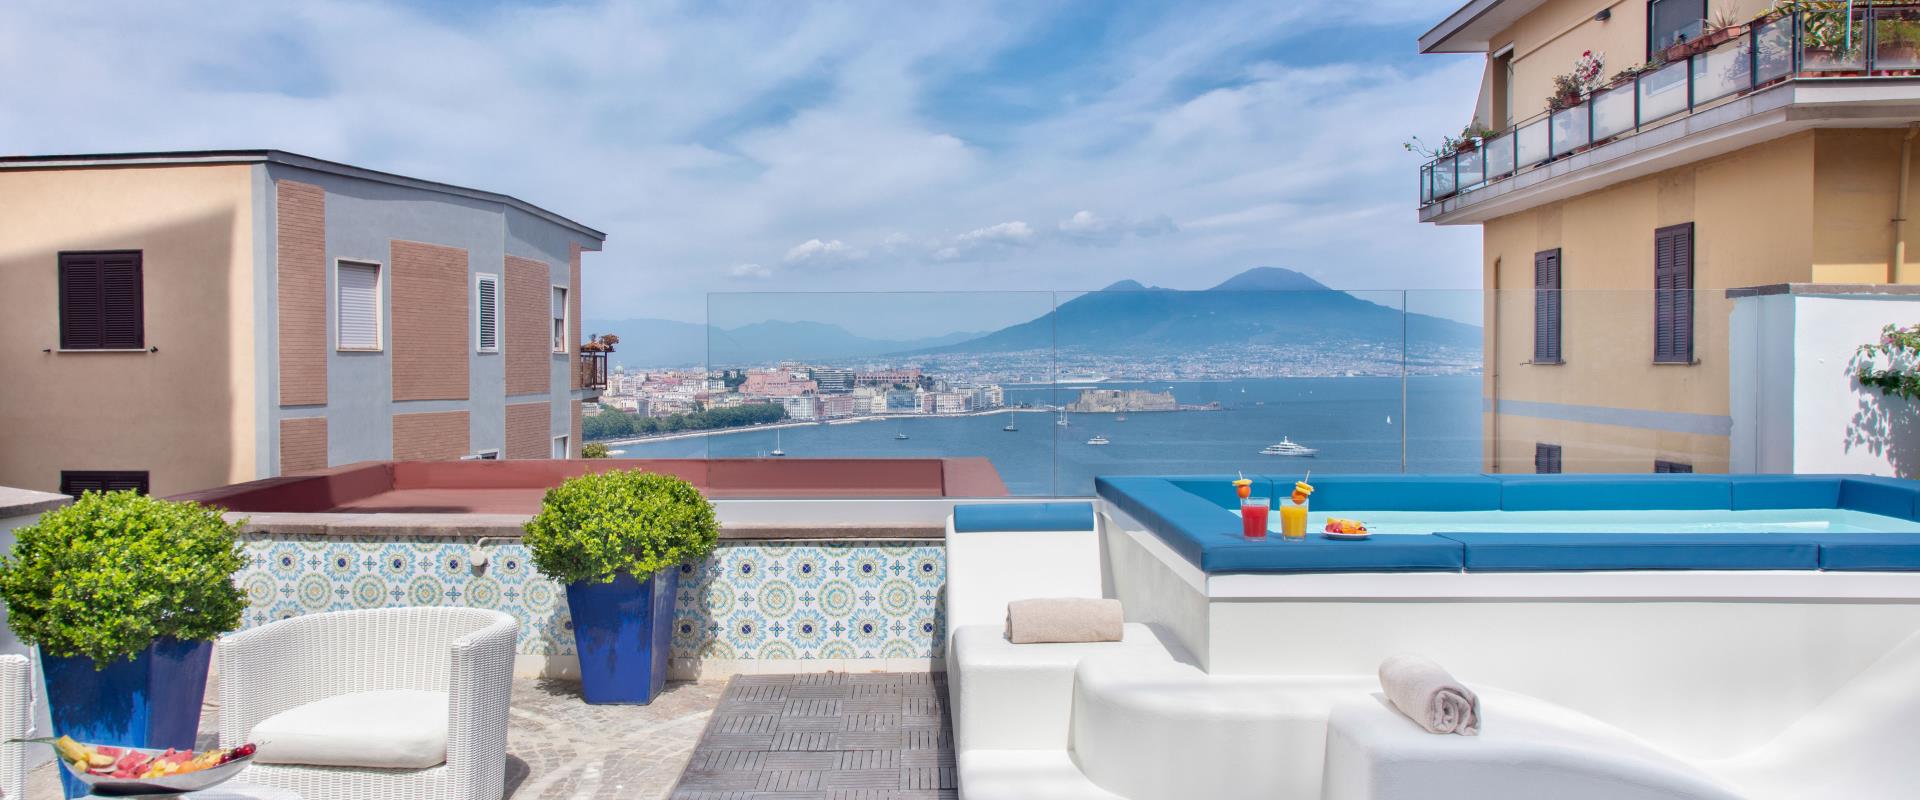 Un bain rafraîchissant avec vue sur le golfe de Naples